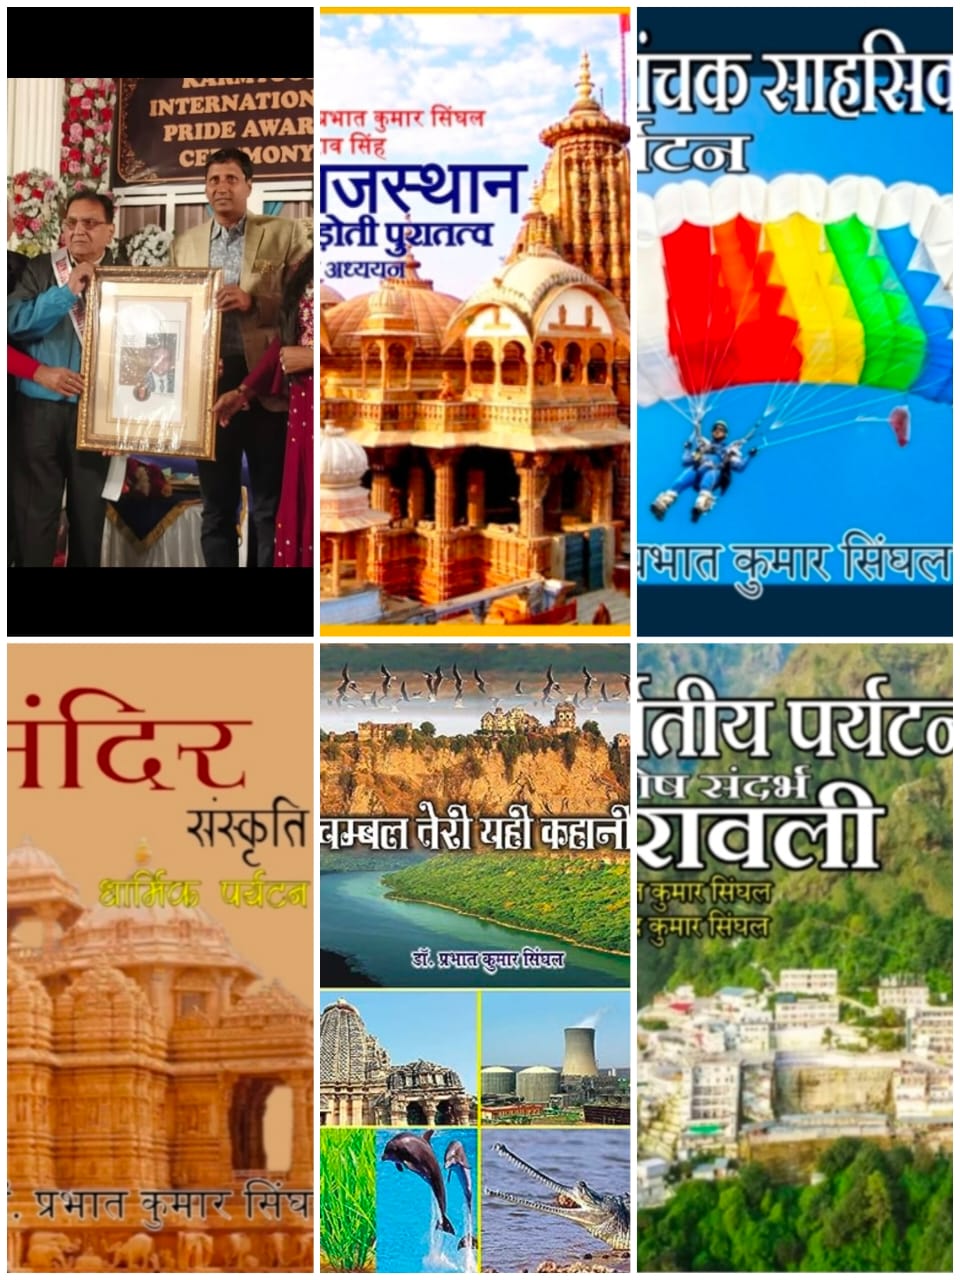 जीवन मूल्यों, सांस्कृतिक परिवेश और मानवीय सन्दर्भों के सशक्त रचनाकार डॉ. प्रभात कुमार सिंघल